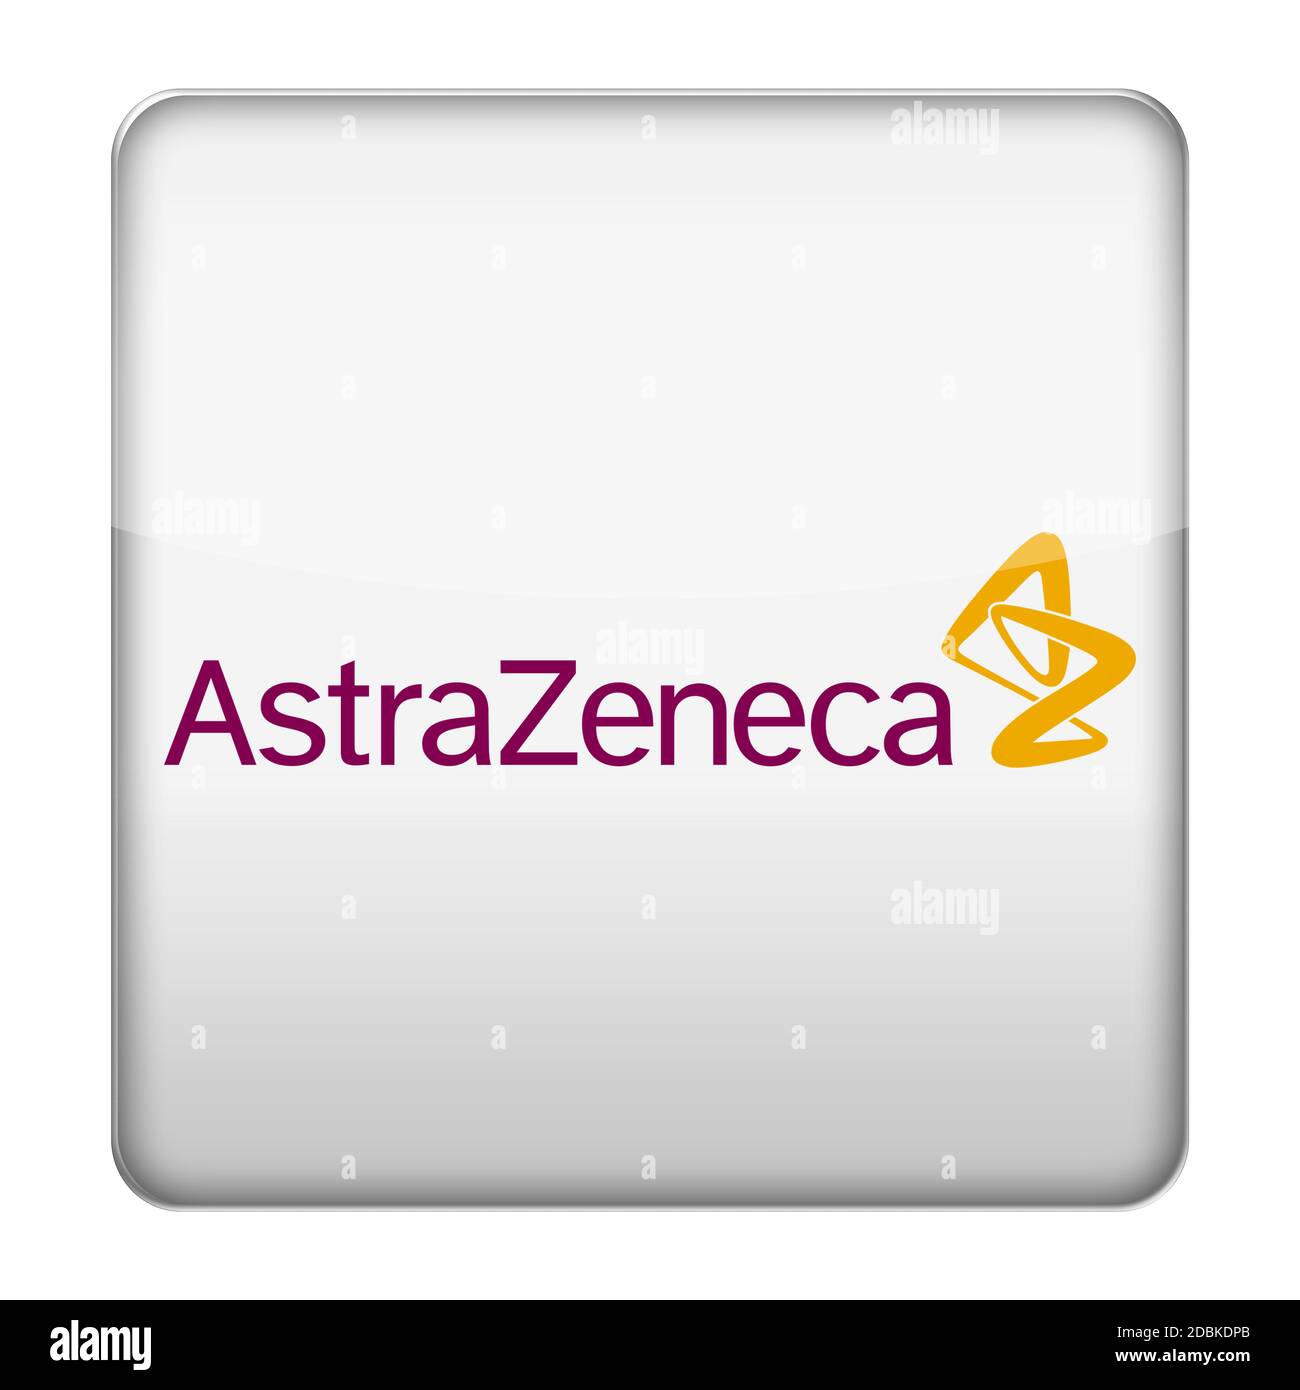 AstraZeneca logo icon Stock Photo